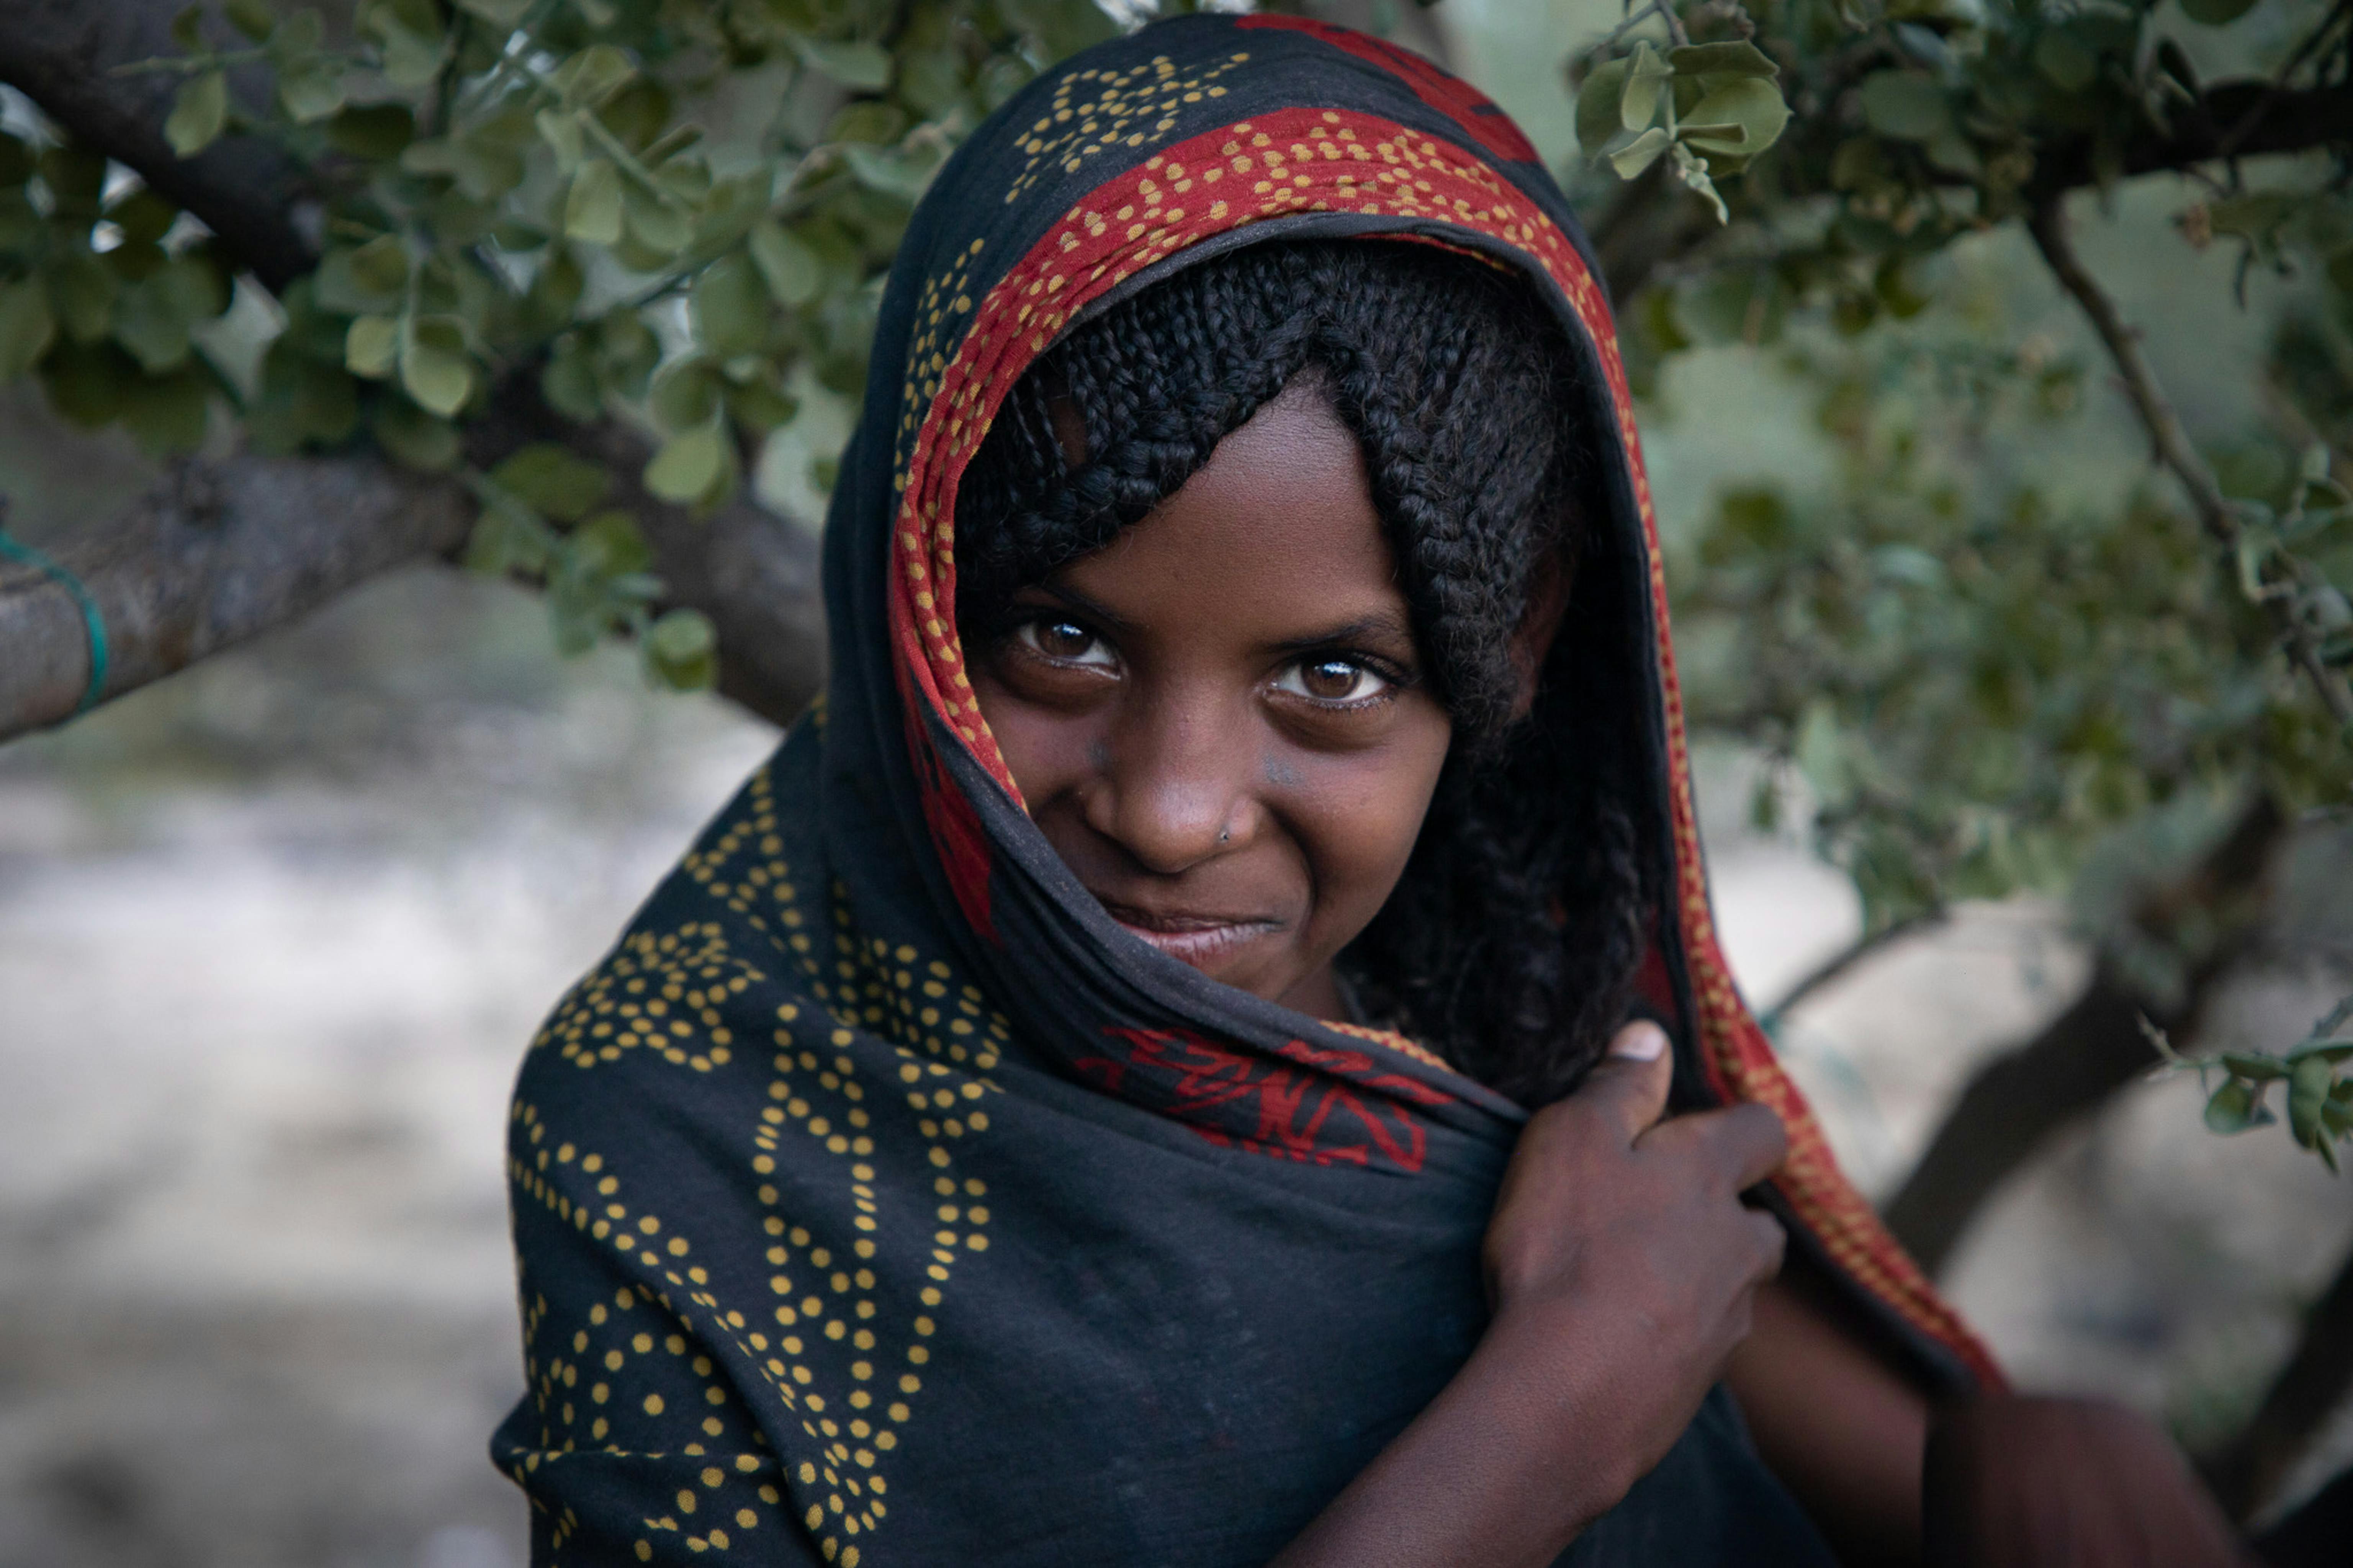 Bambine, non spose. Nella regione colpita dalla siccità di Afar, nell'Etiopia nord-orientale, la scarsità d'acqua e la perdita dei mezzi di sussistenza minacciano il futuro delle ragazze che sono sempre più costrette a sposarsi precocemente.